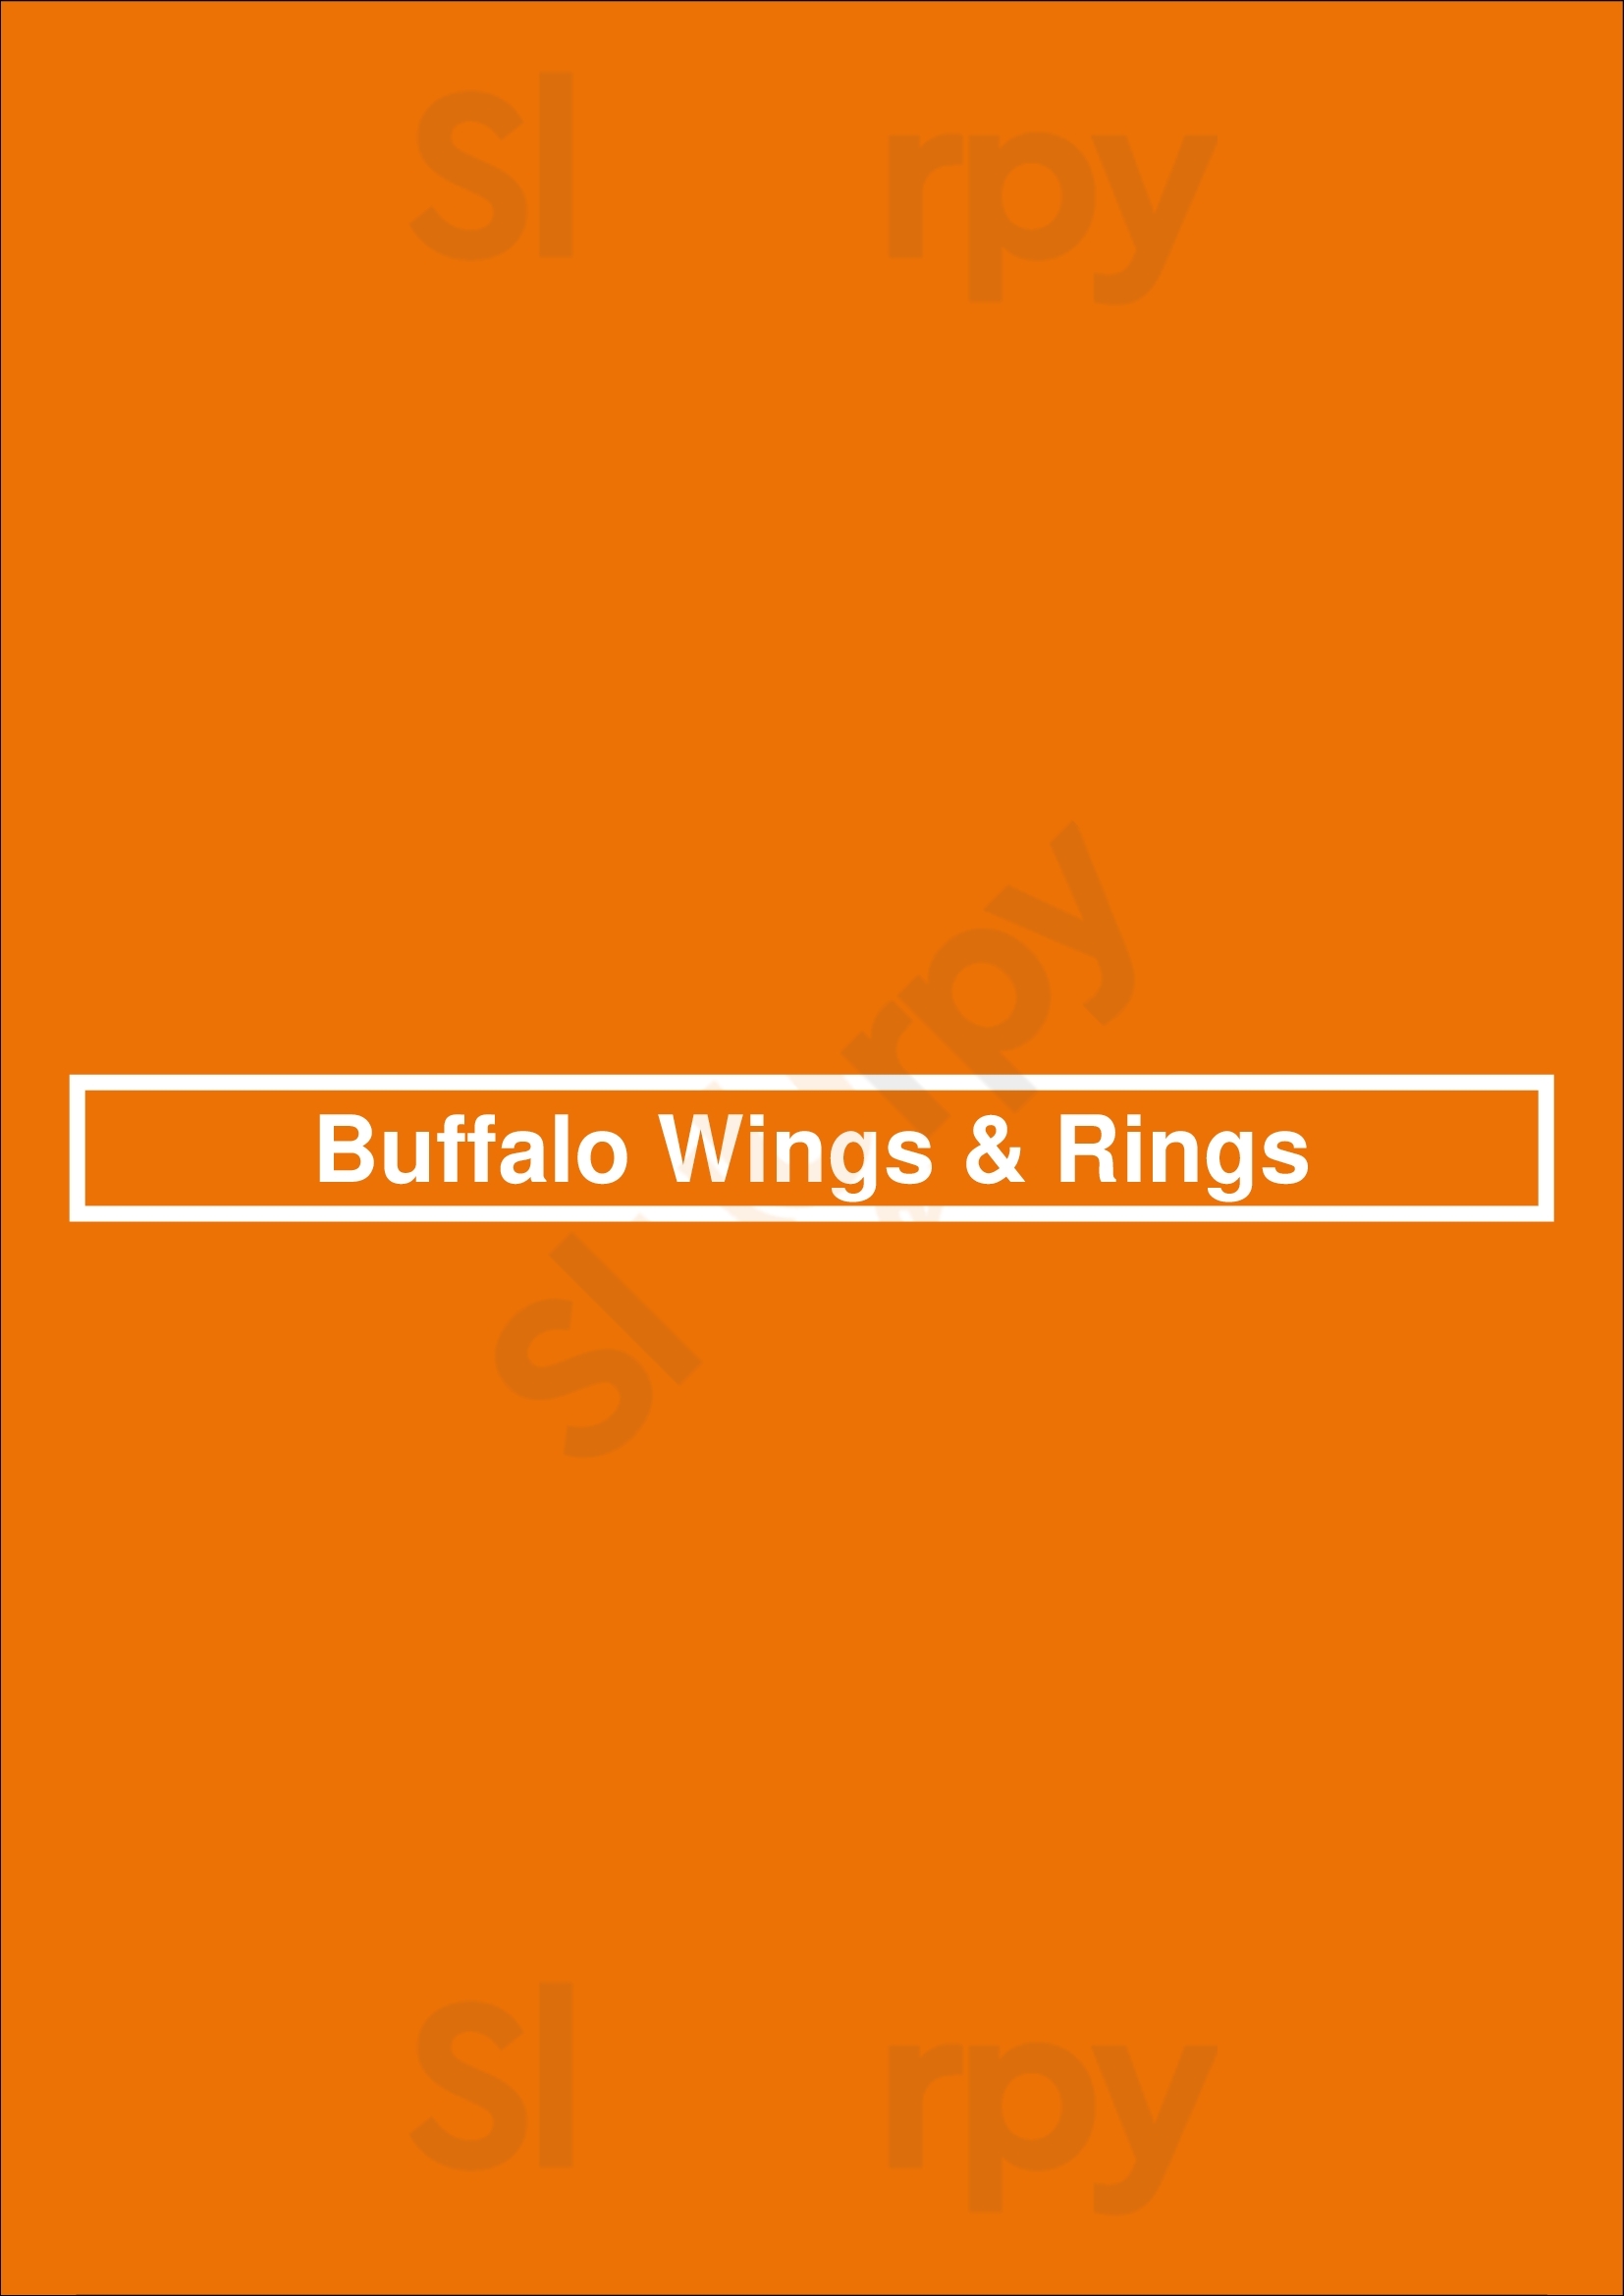 Buffalo Wings & Rings Arlington Menu - 1